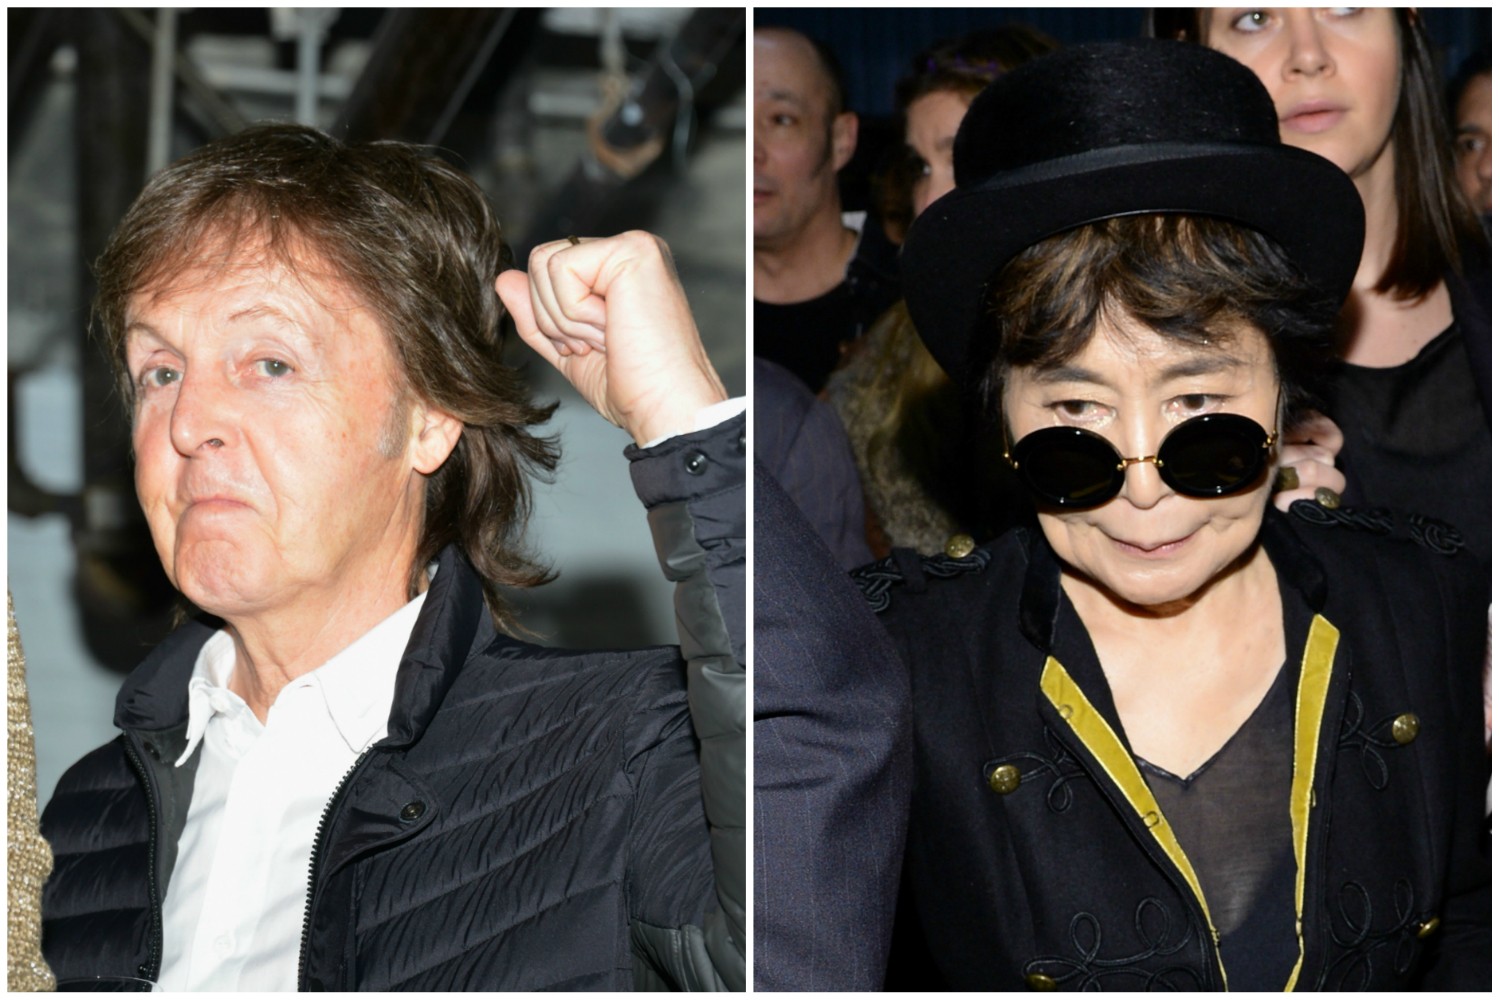 As diferenças entre Yoko Ono e Paul McCartney começaram pelo menos em 1970, quando os Beatles se desfizeram. Por causa disso, ela foi apontada como responsável pelo fim da lendária banda de rock. Até que McCartney levantou a bandeira branca 43 anos depois, em uma entrevista. Yoko, pacifista histórica, depois se disse contente pelas coisas terem afinal se acertado, embora ela e o músico não mantenham nenhum tipo de contato. (Foto: Getty Images)